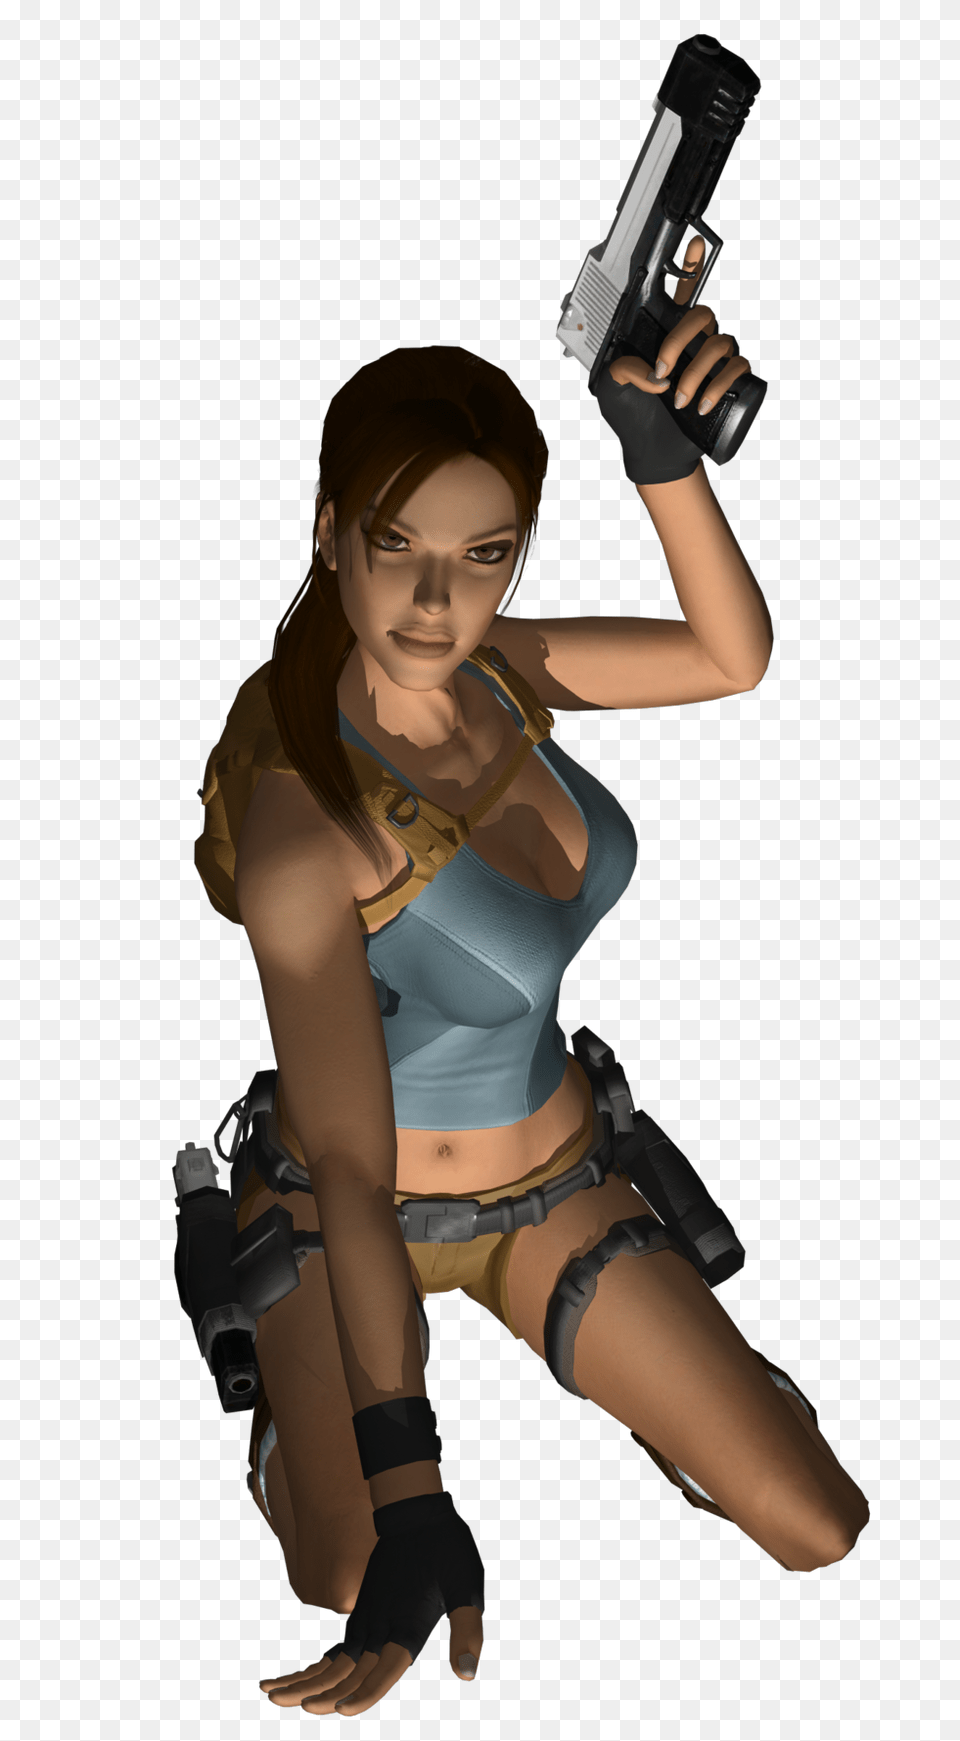 Lara 2, Gun, Clothing, Costume, Weapon Png